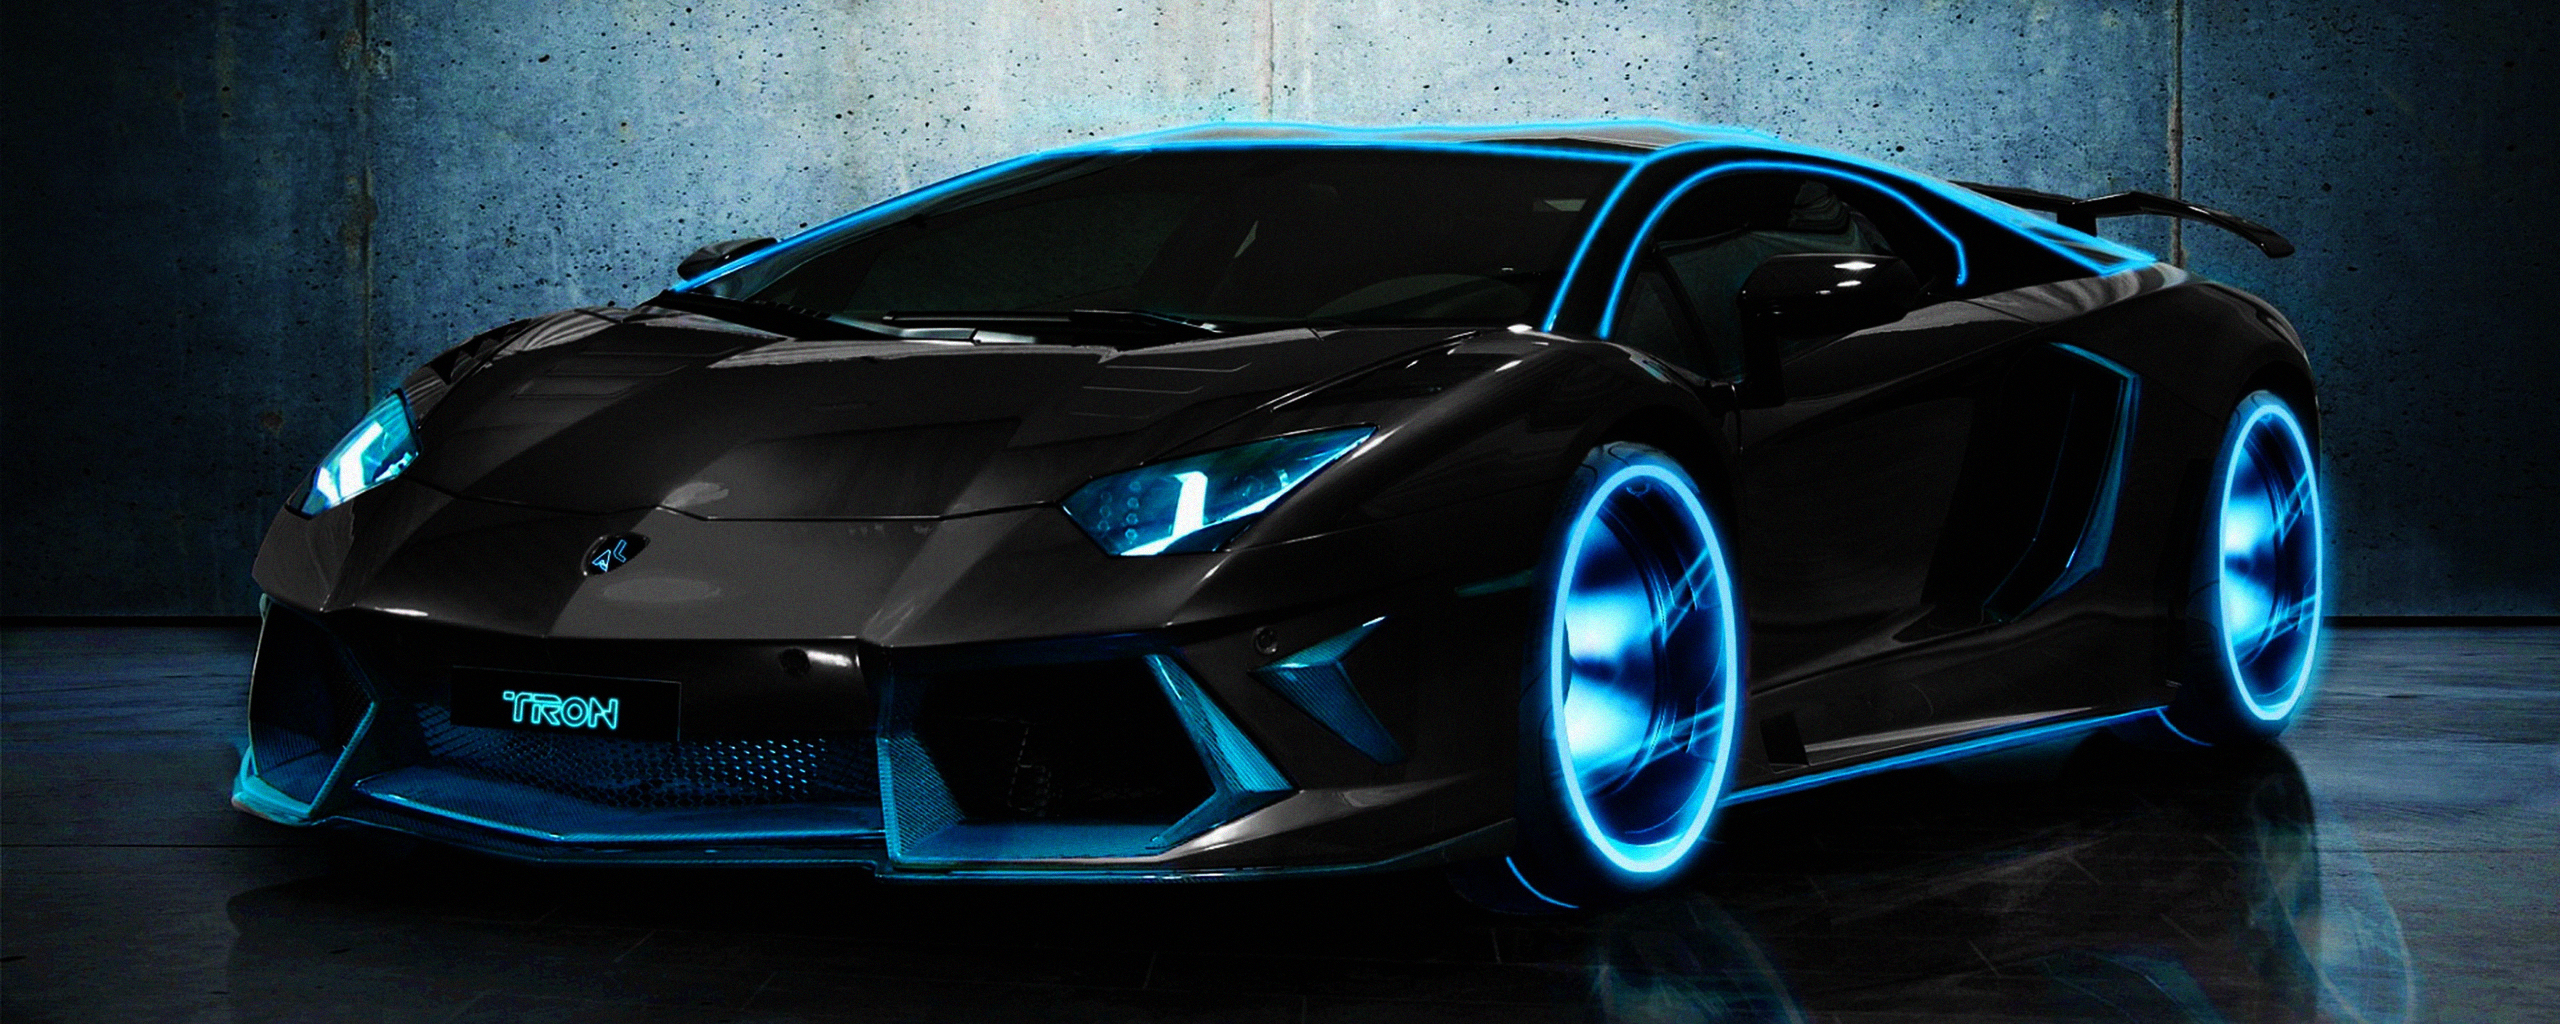 Descargar las imágenes de Lamborghini gratis para teléfonos Android y  iPhone, fondos de pantalla de Lamborghini para teléfonos móviles